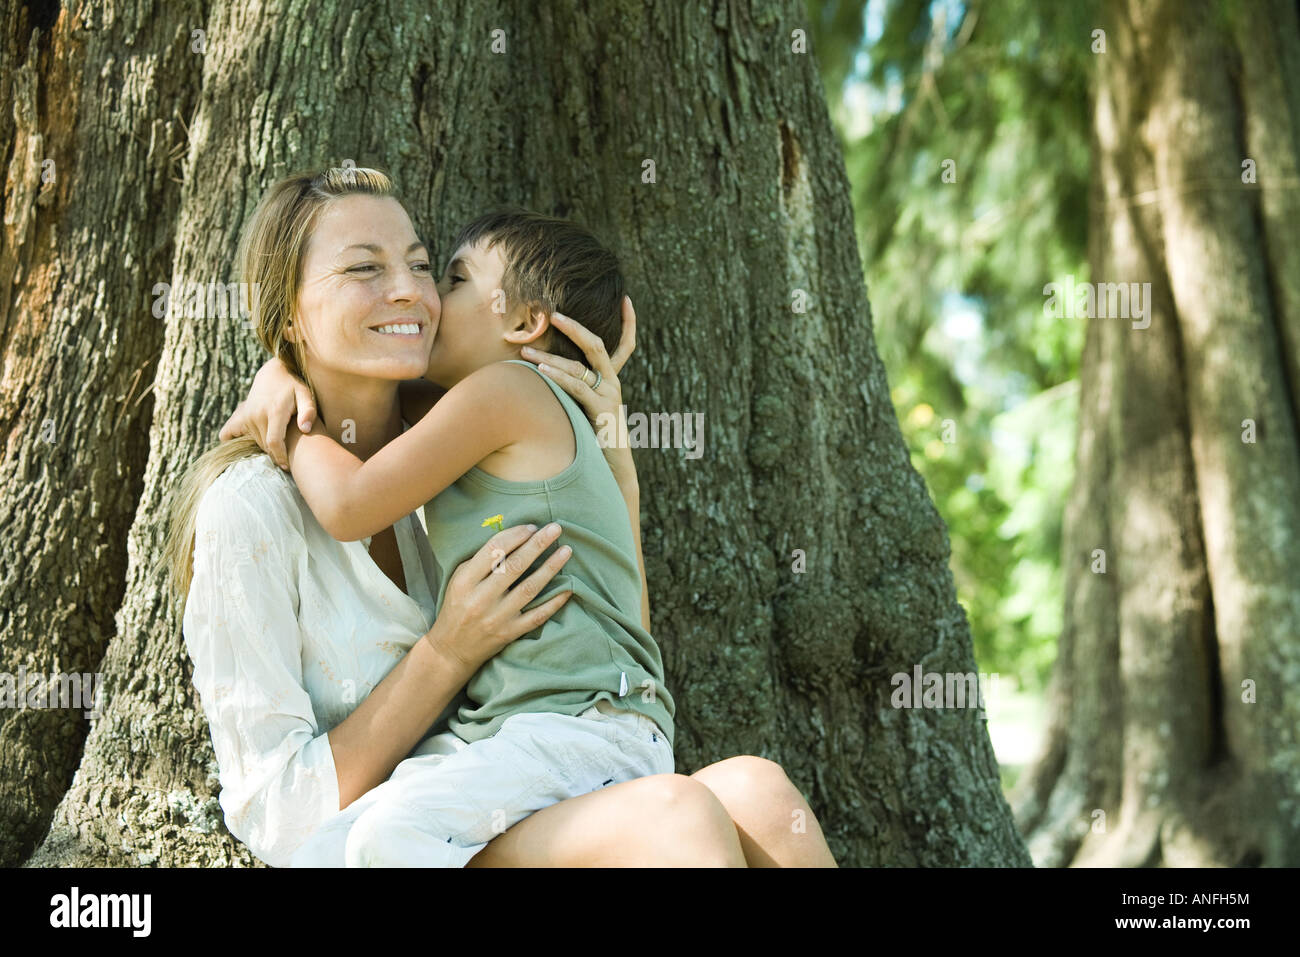 La madre e il figlio, donna fiore di contenimento, ragazzo bacio sulla guancia Foto Stock